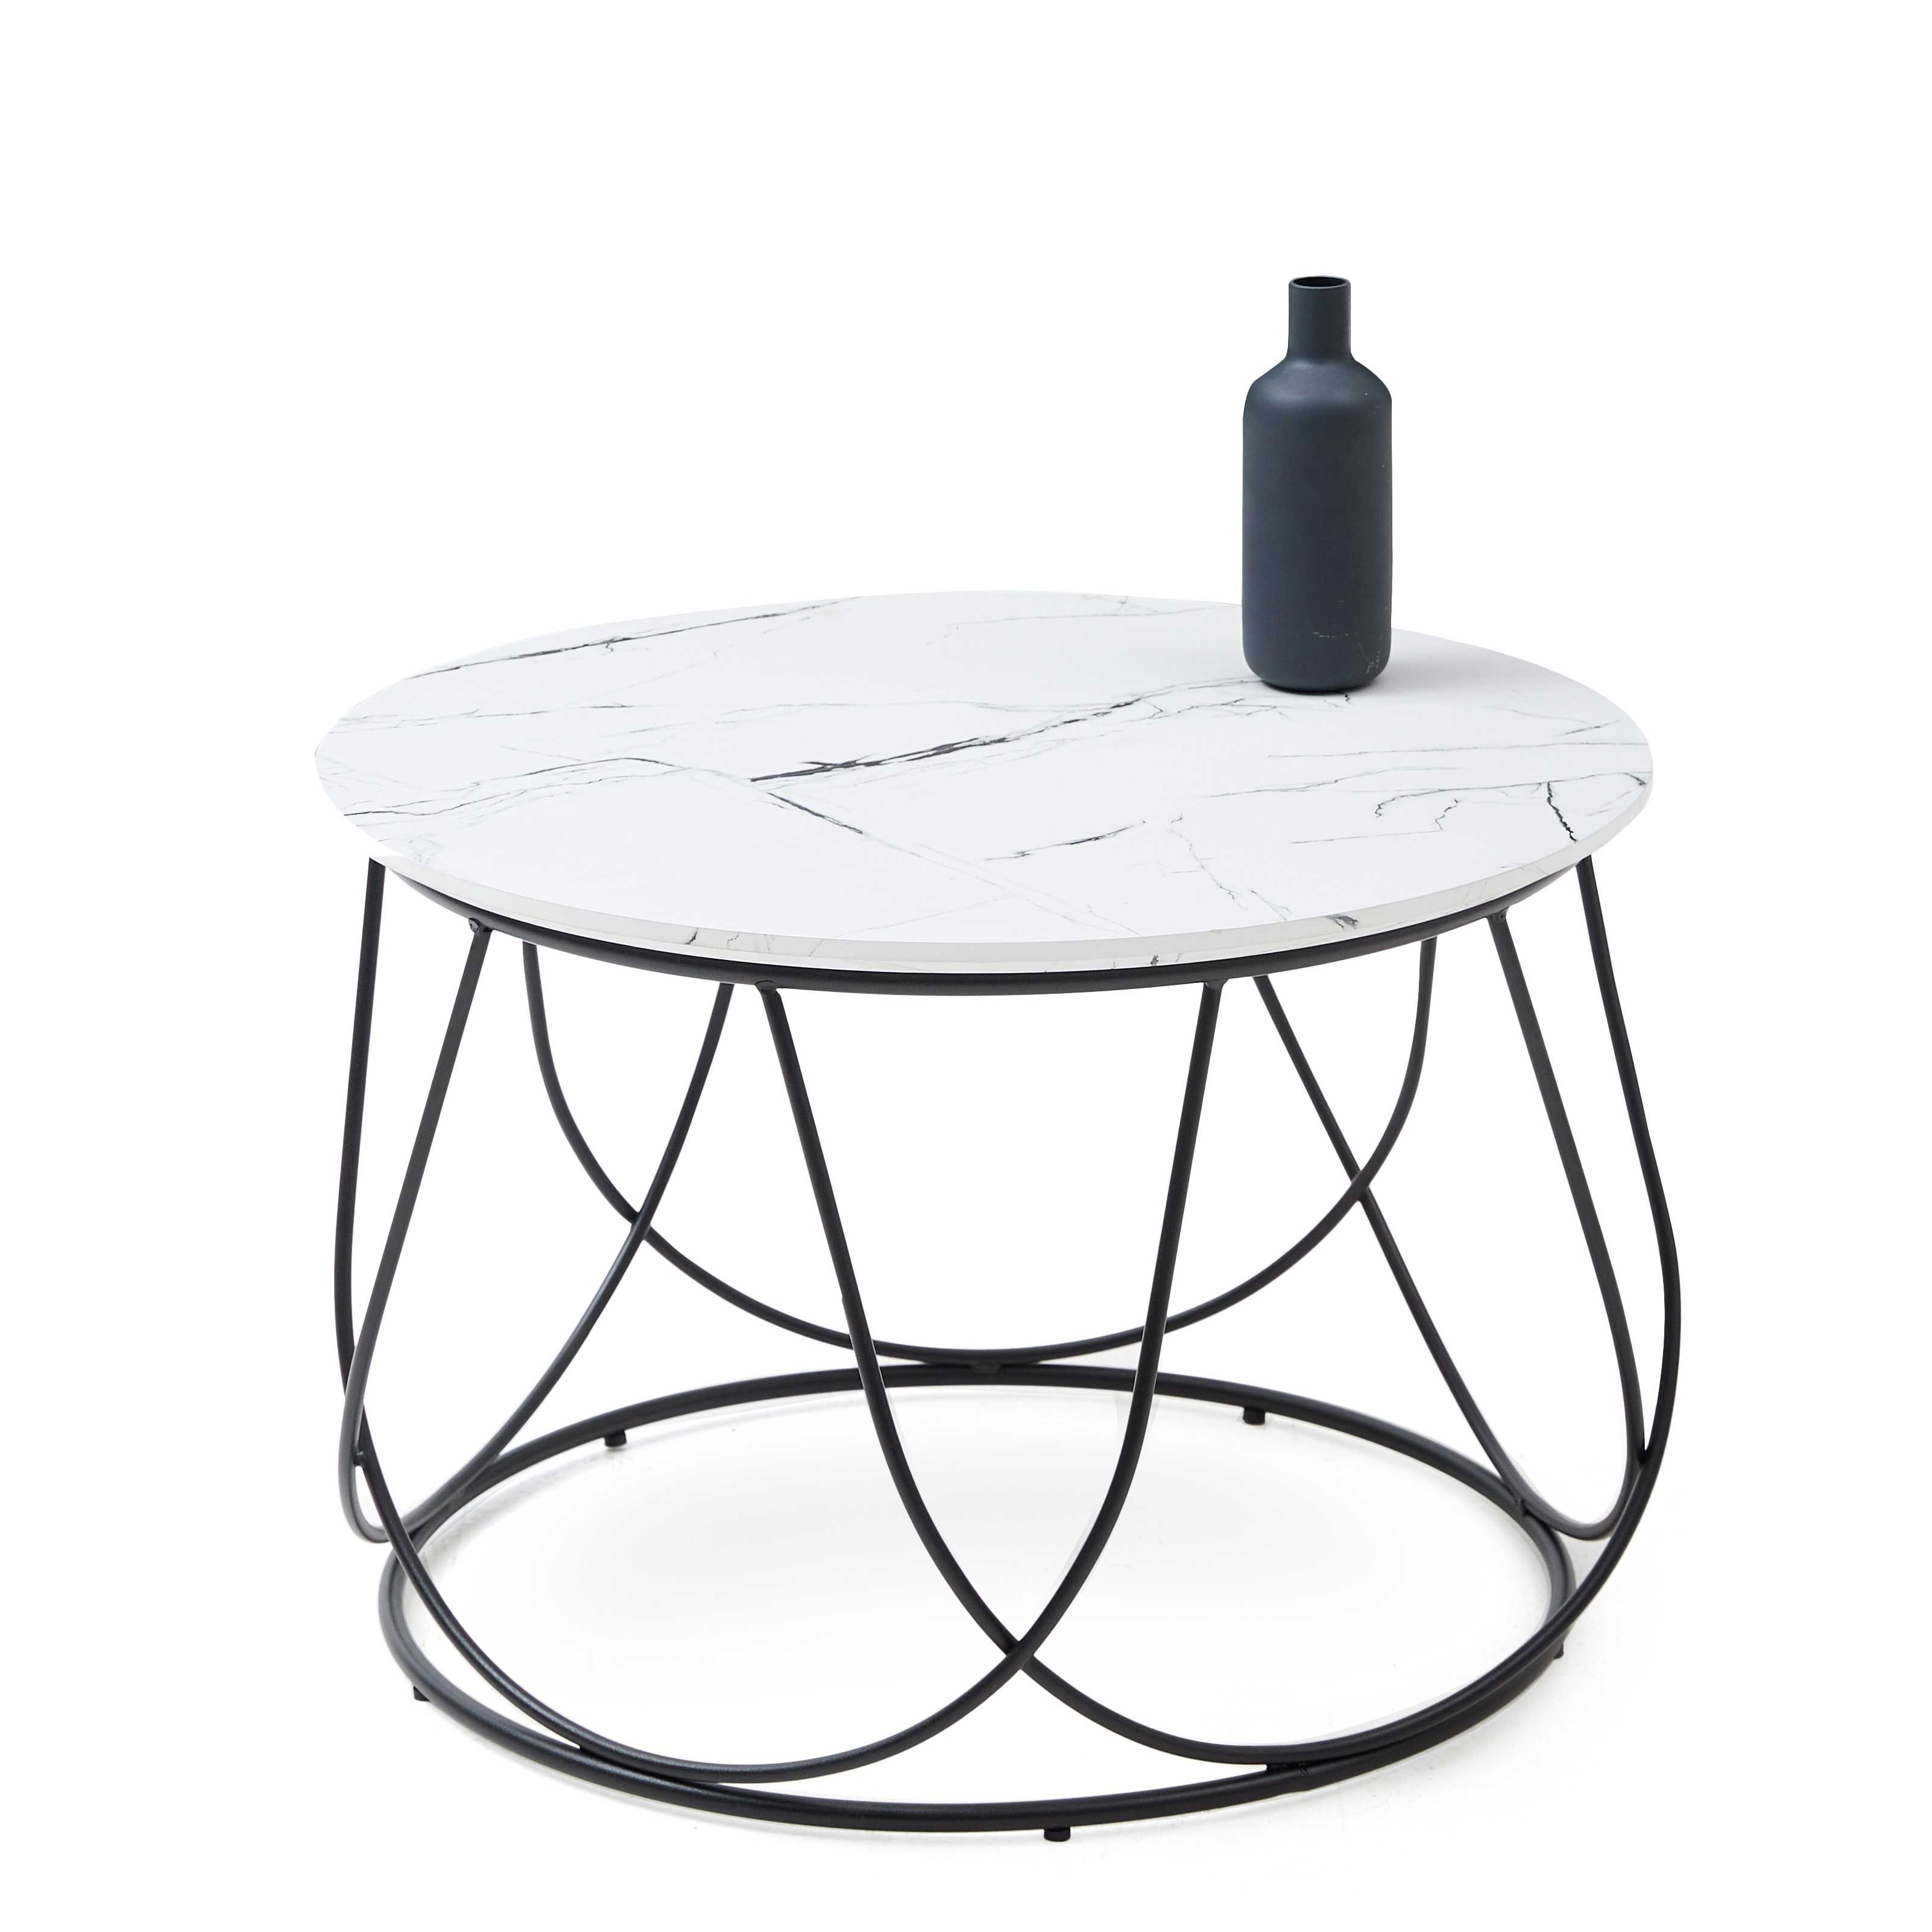 NUBIRA Konferenční stolek Rošt - Černý, Deska - Bílý mramor (1p=1szt) nubira Konferenční stolek Rošt - Černý, Deska - Bílý mramor